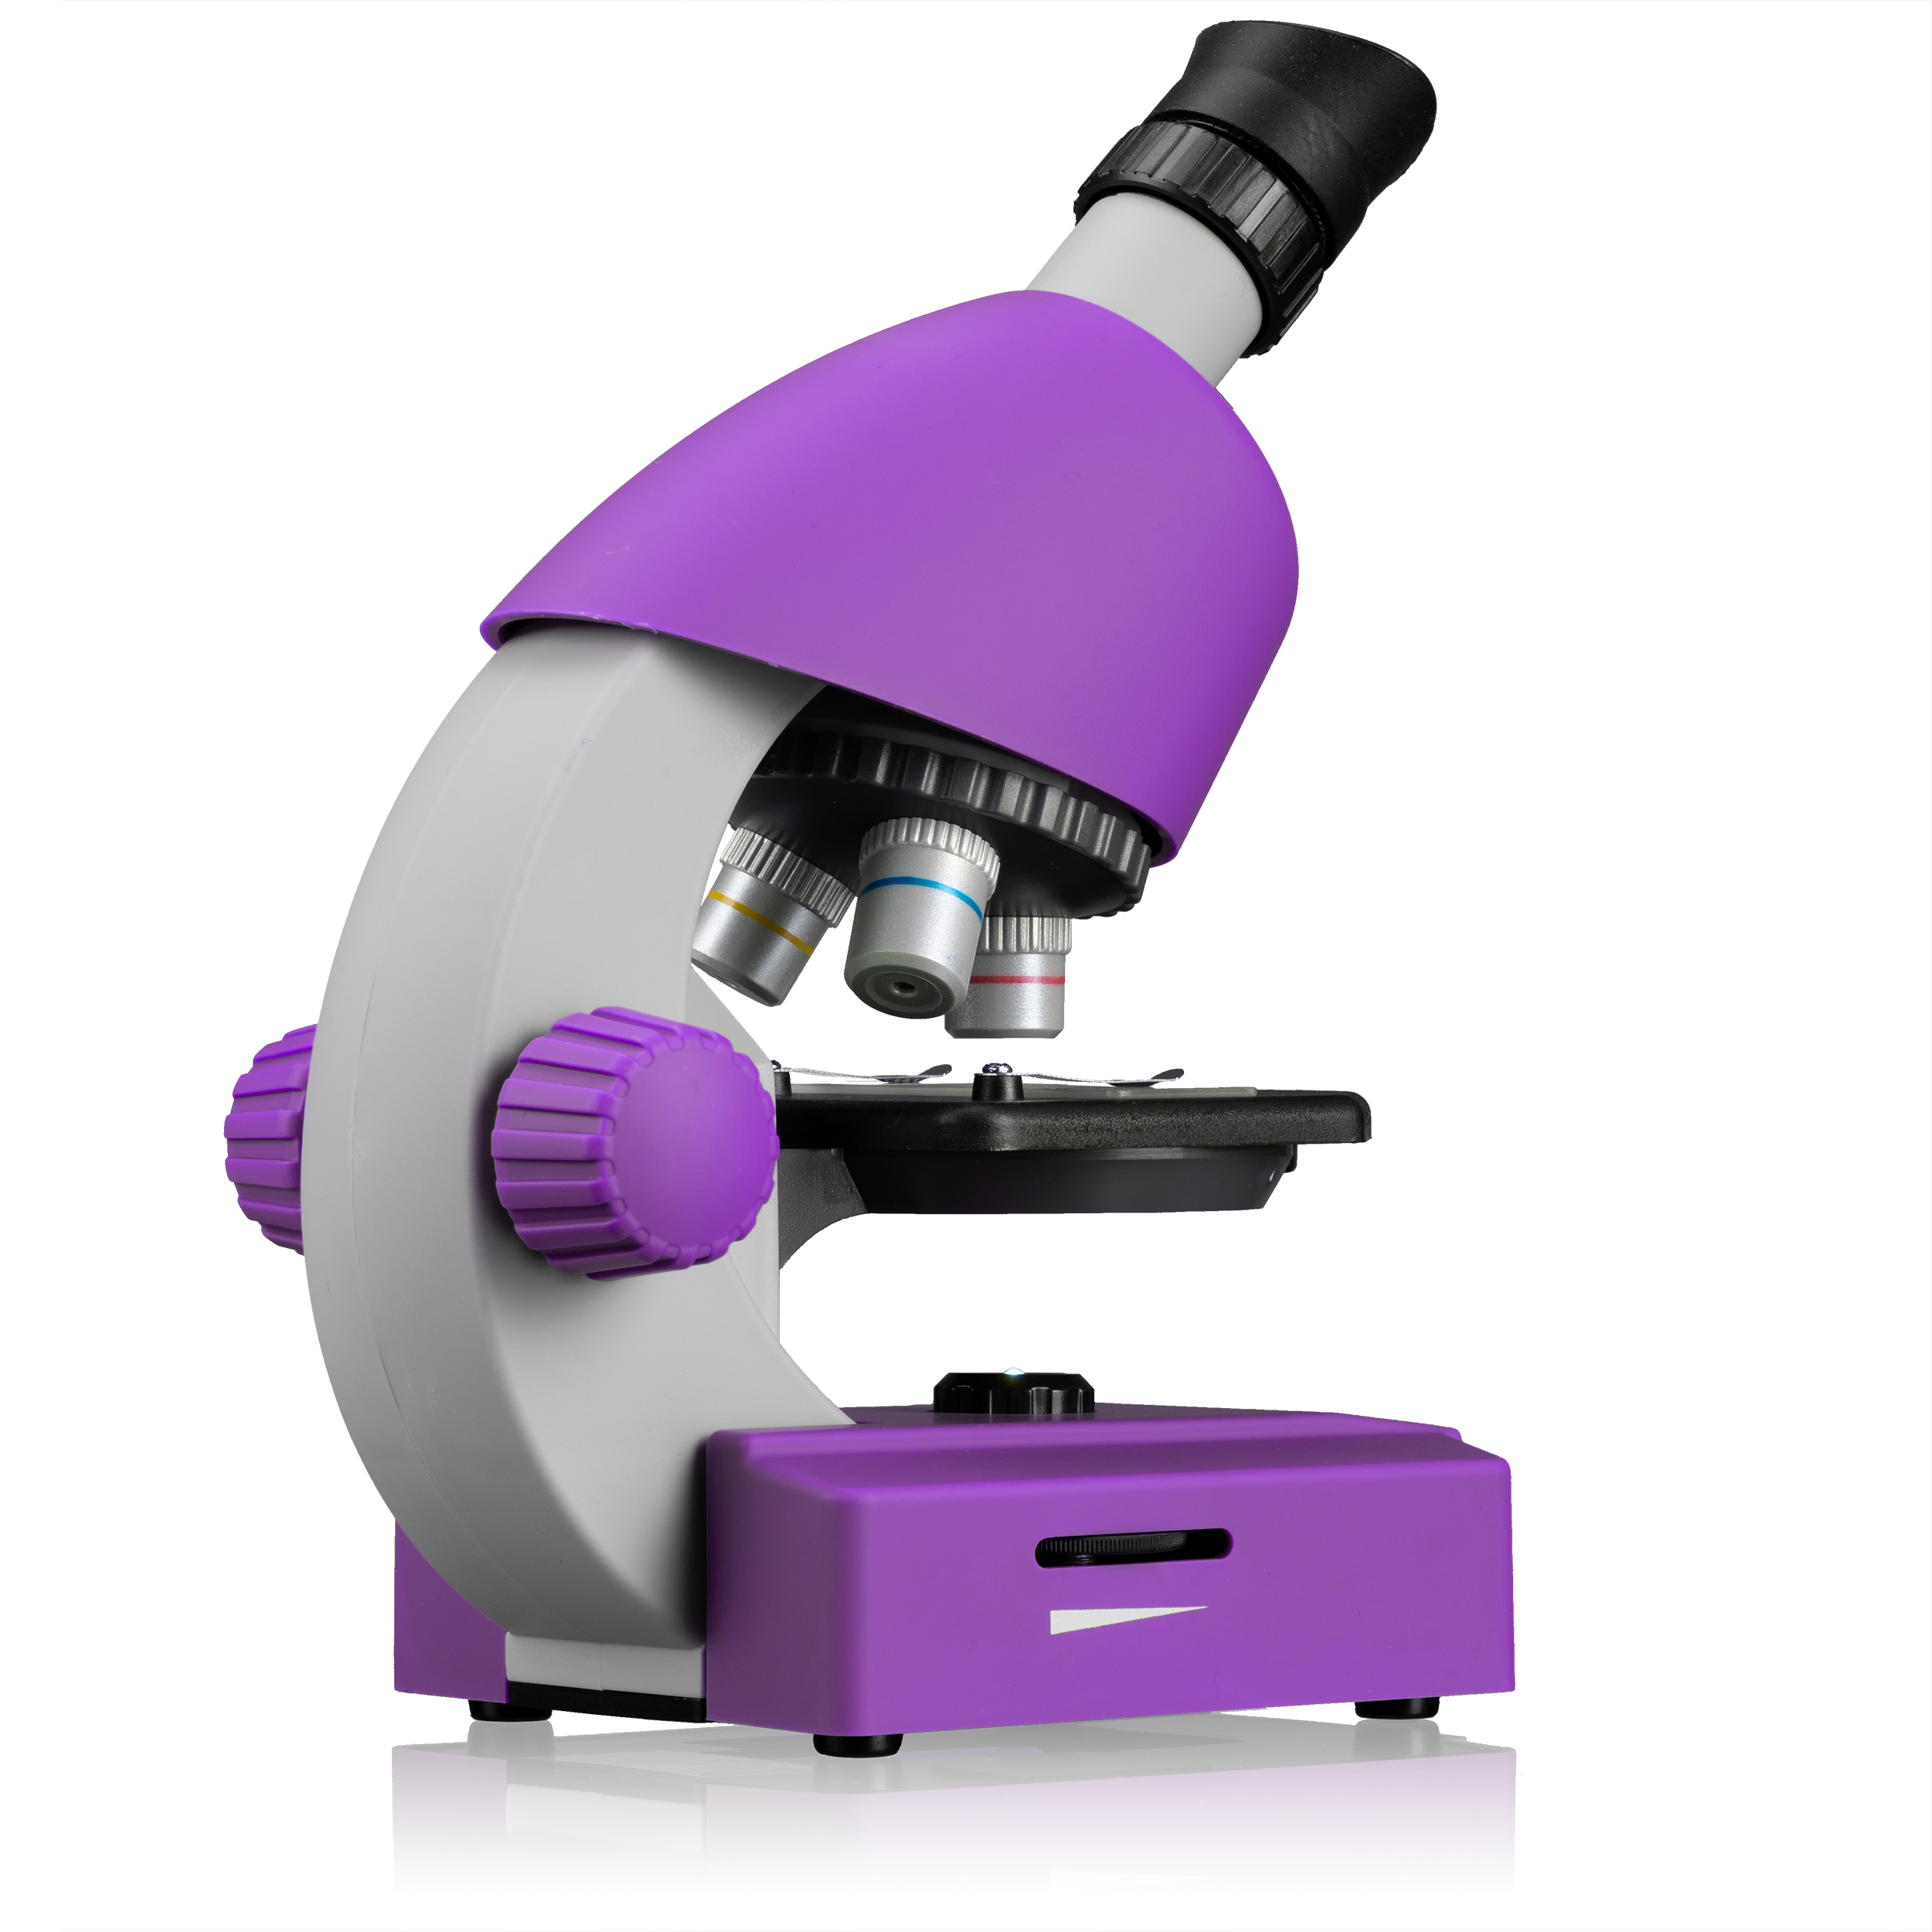 Mikroskop, BRESSER Color 40x-640x JUNIOR